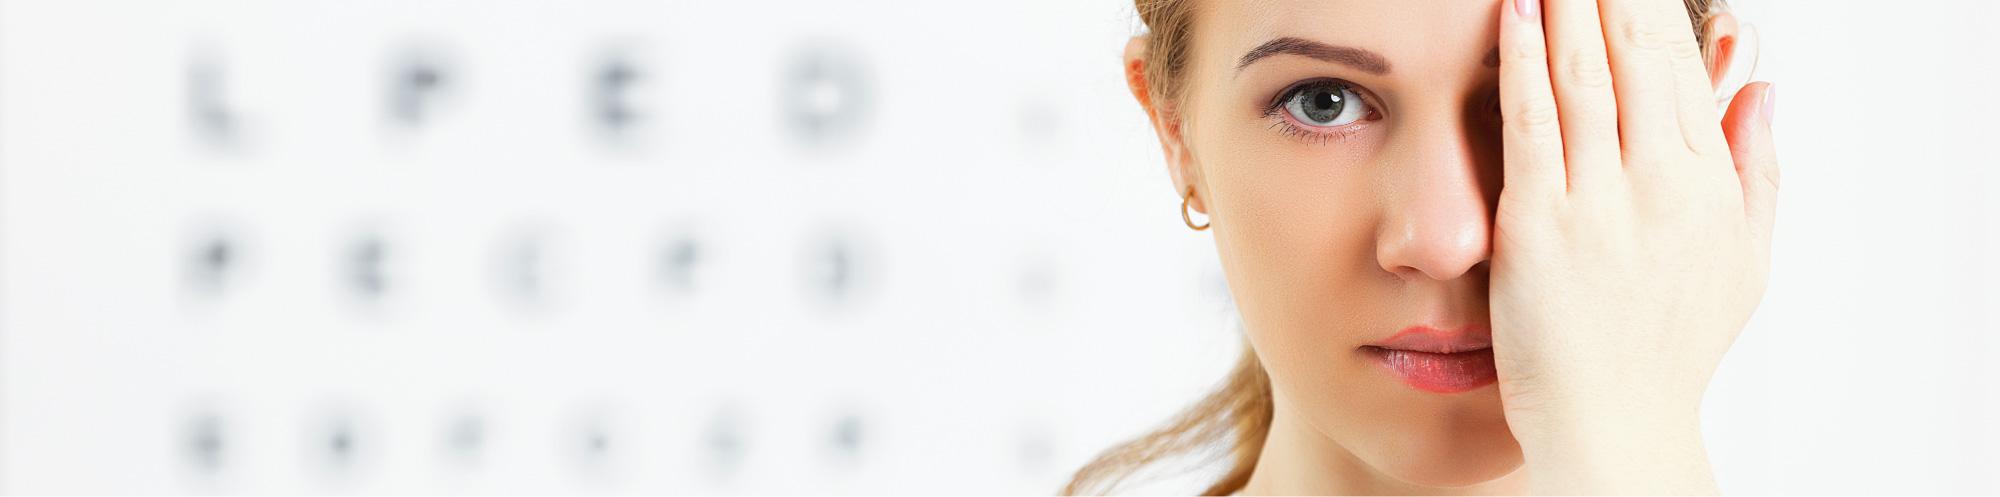 Sehschule - Augenarztpraxis Buchen